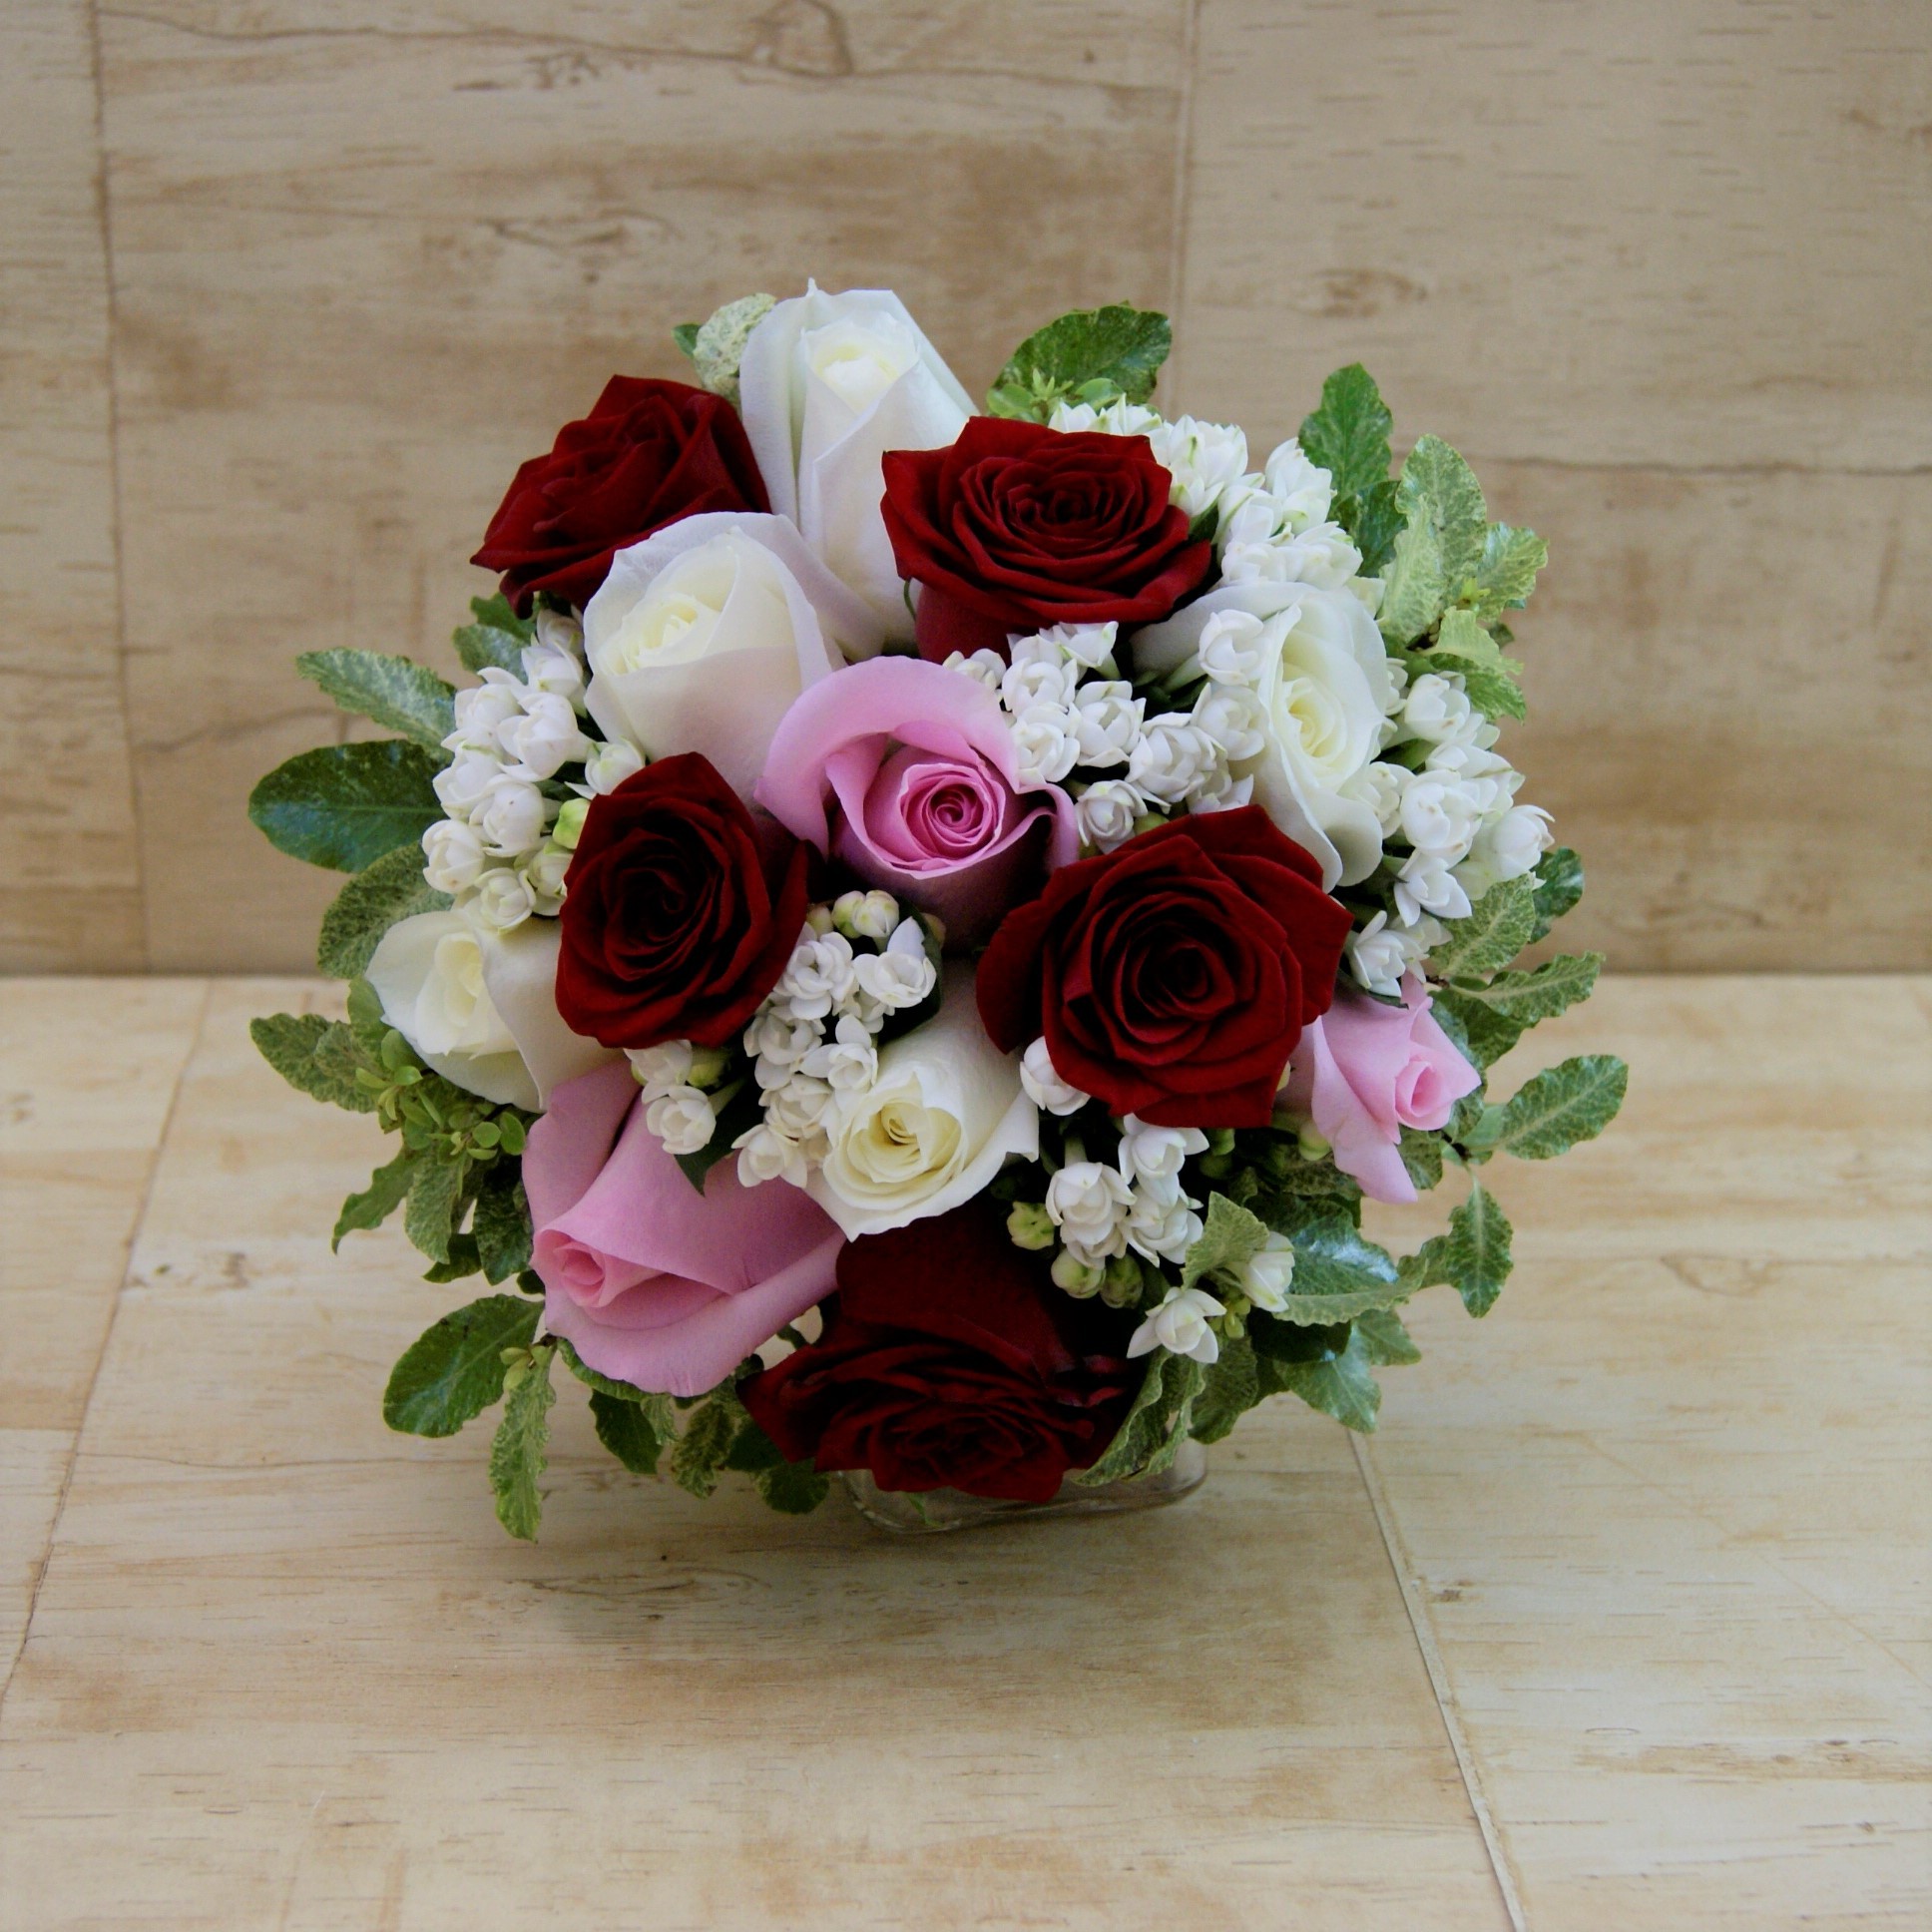 Ramo de novia con rosas en tonos rojo, blanco y rosa, bouvardia blanca